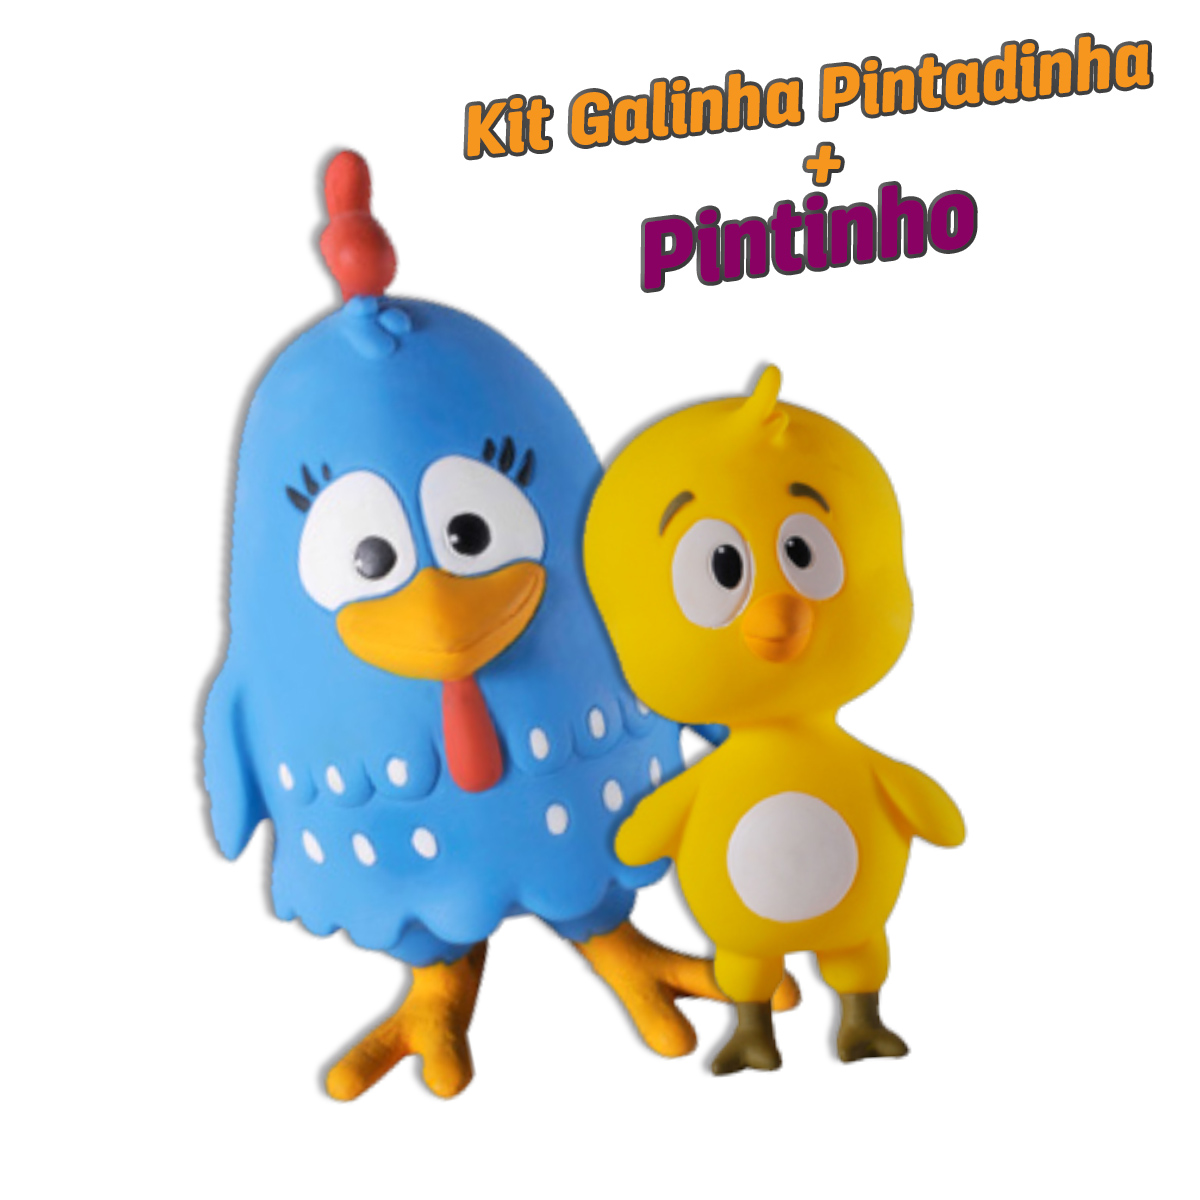 Kit Brinquedo em Látex Atóxico Galinha Pintadinha + Pintinho para Cães e Gatos - Latoy